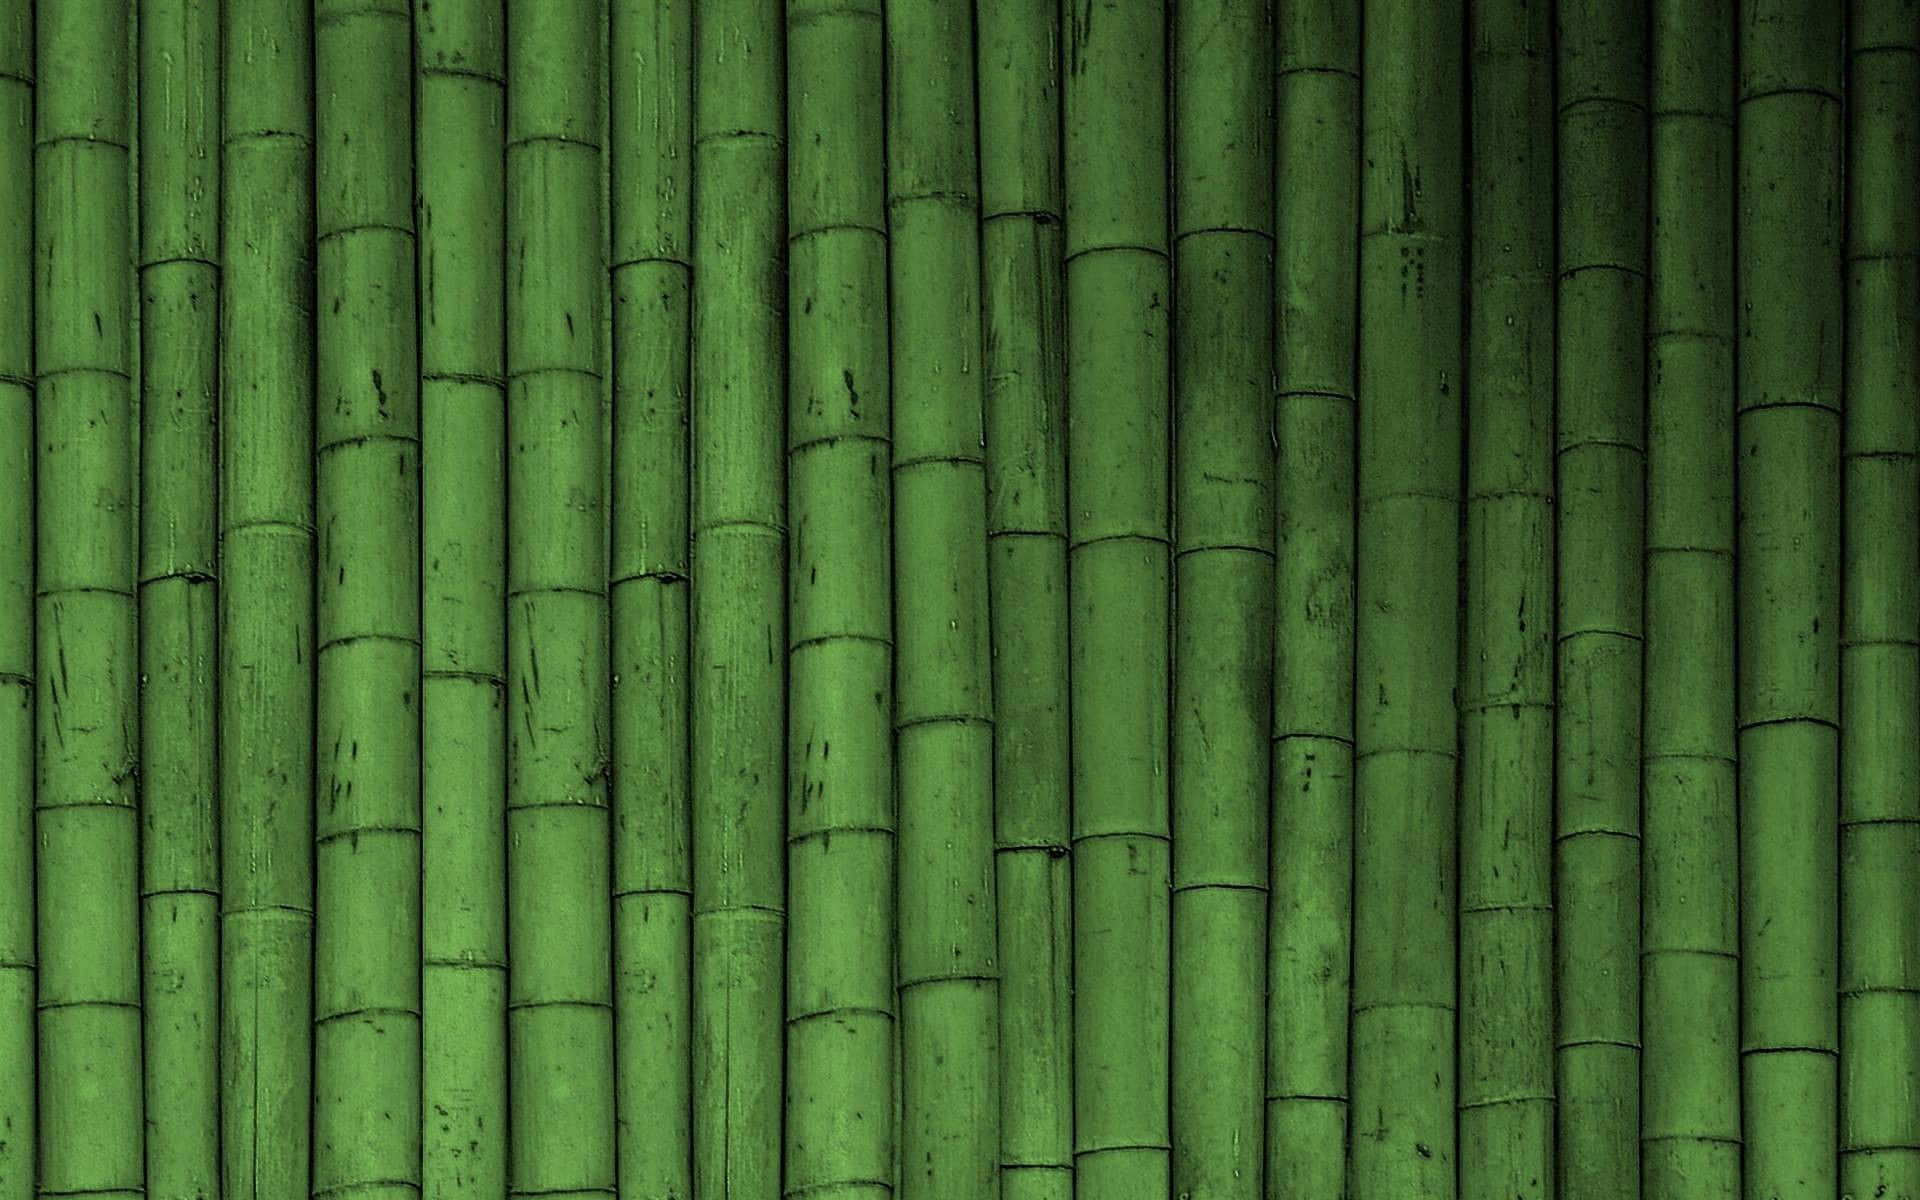 Unaimagen De Un Tranquilo Bosque De Bambú Verde. Fondo de pantalla